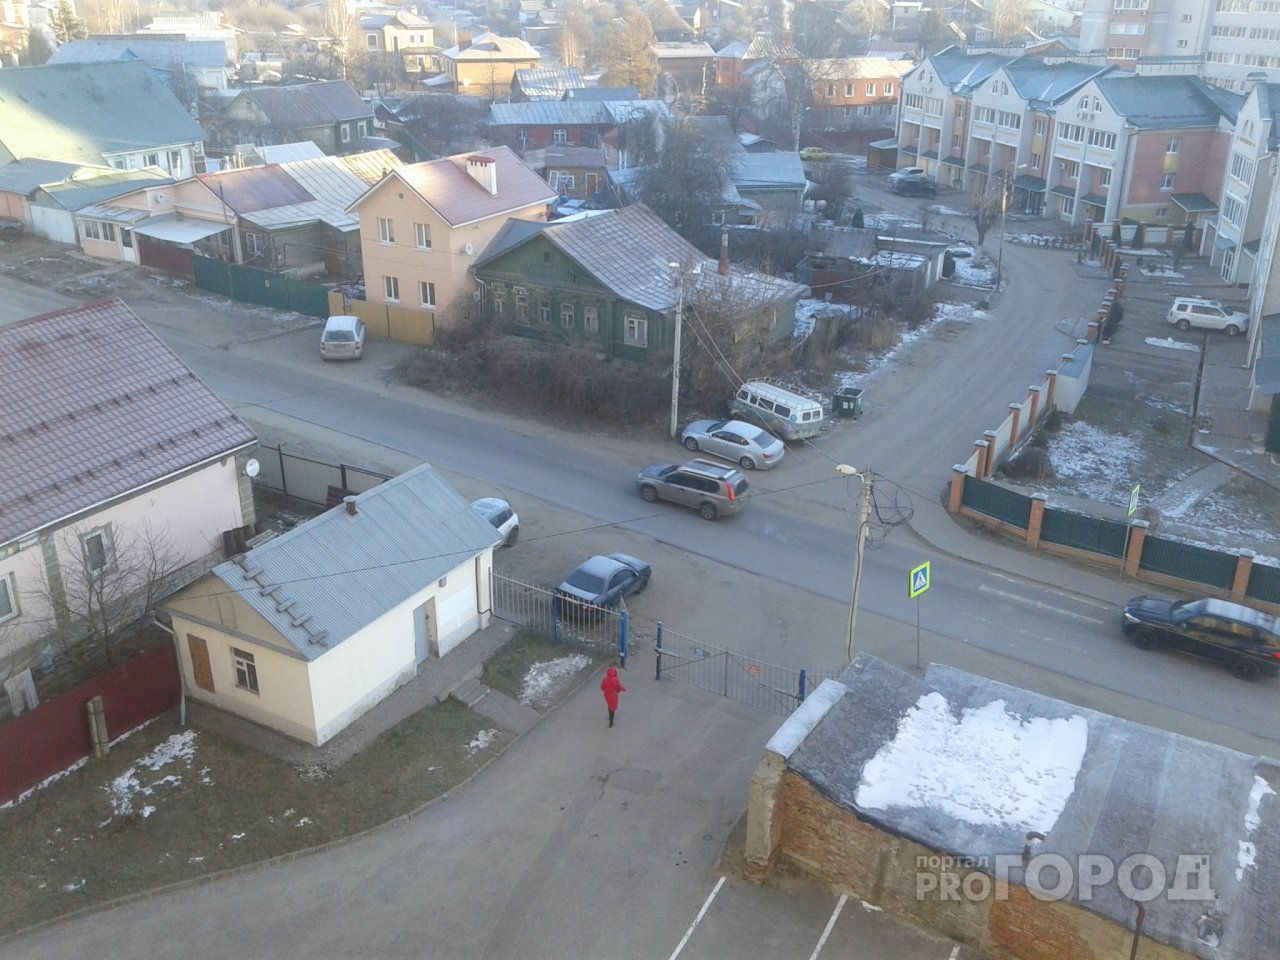 Синоптики рассказали, надолго ли пришли морозы во Владимир и будет ли снег